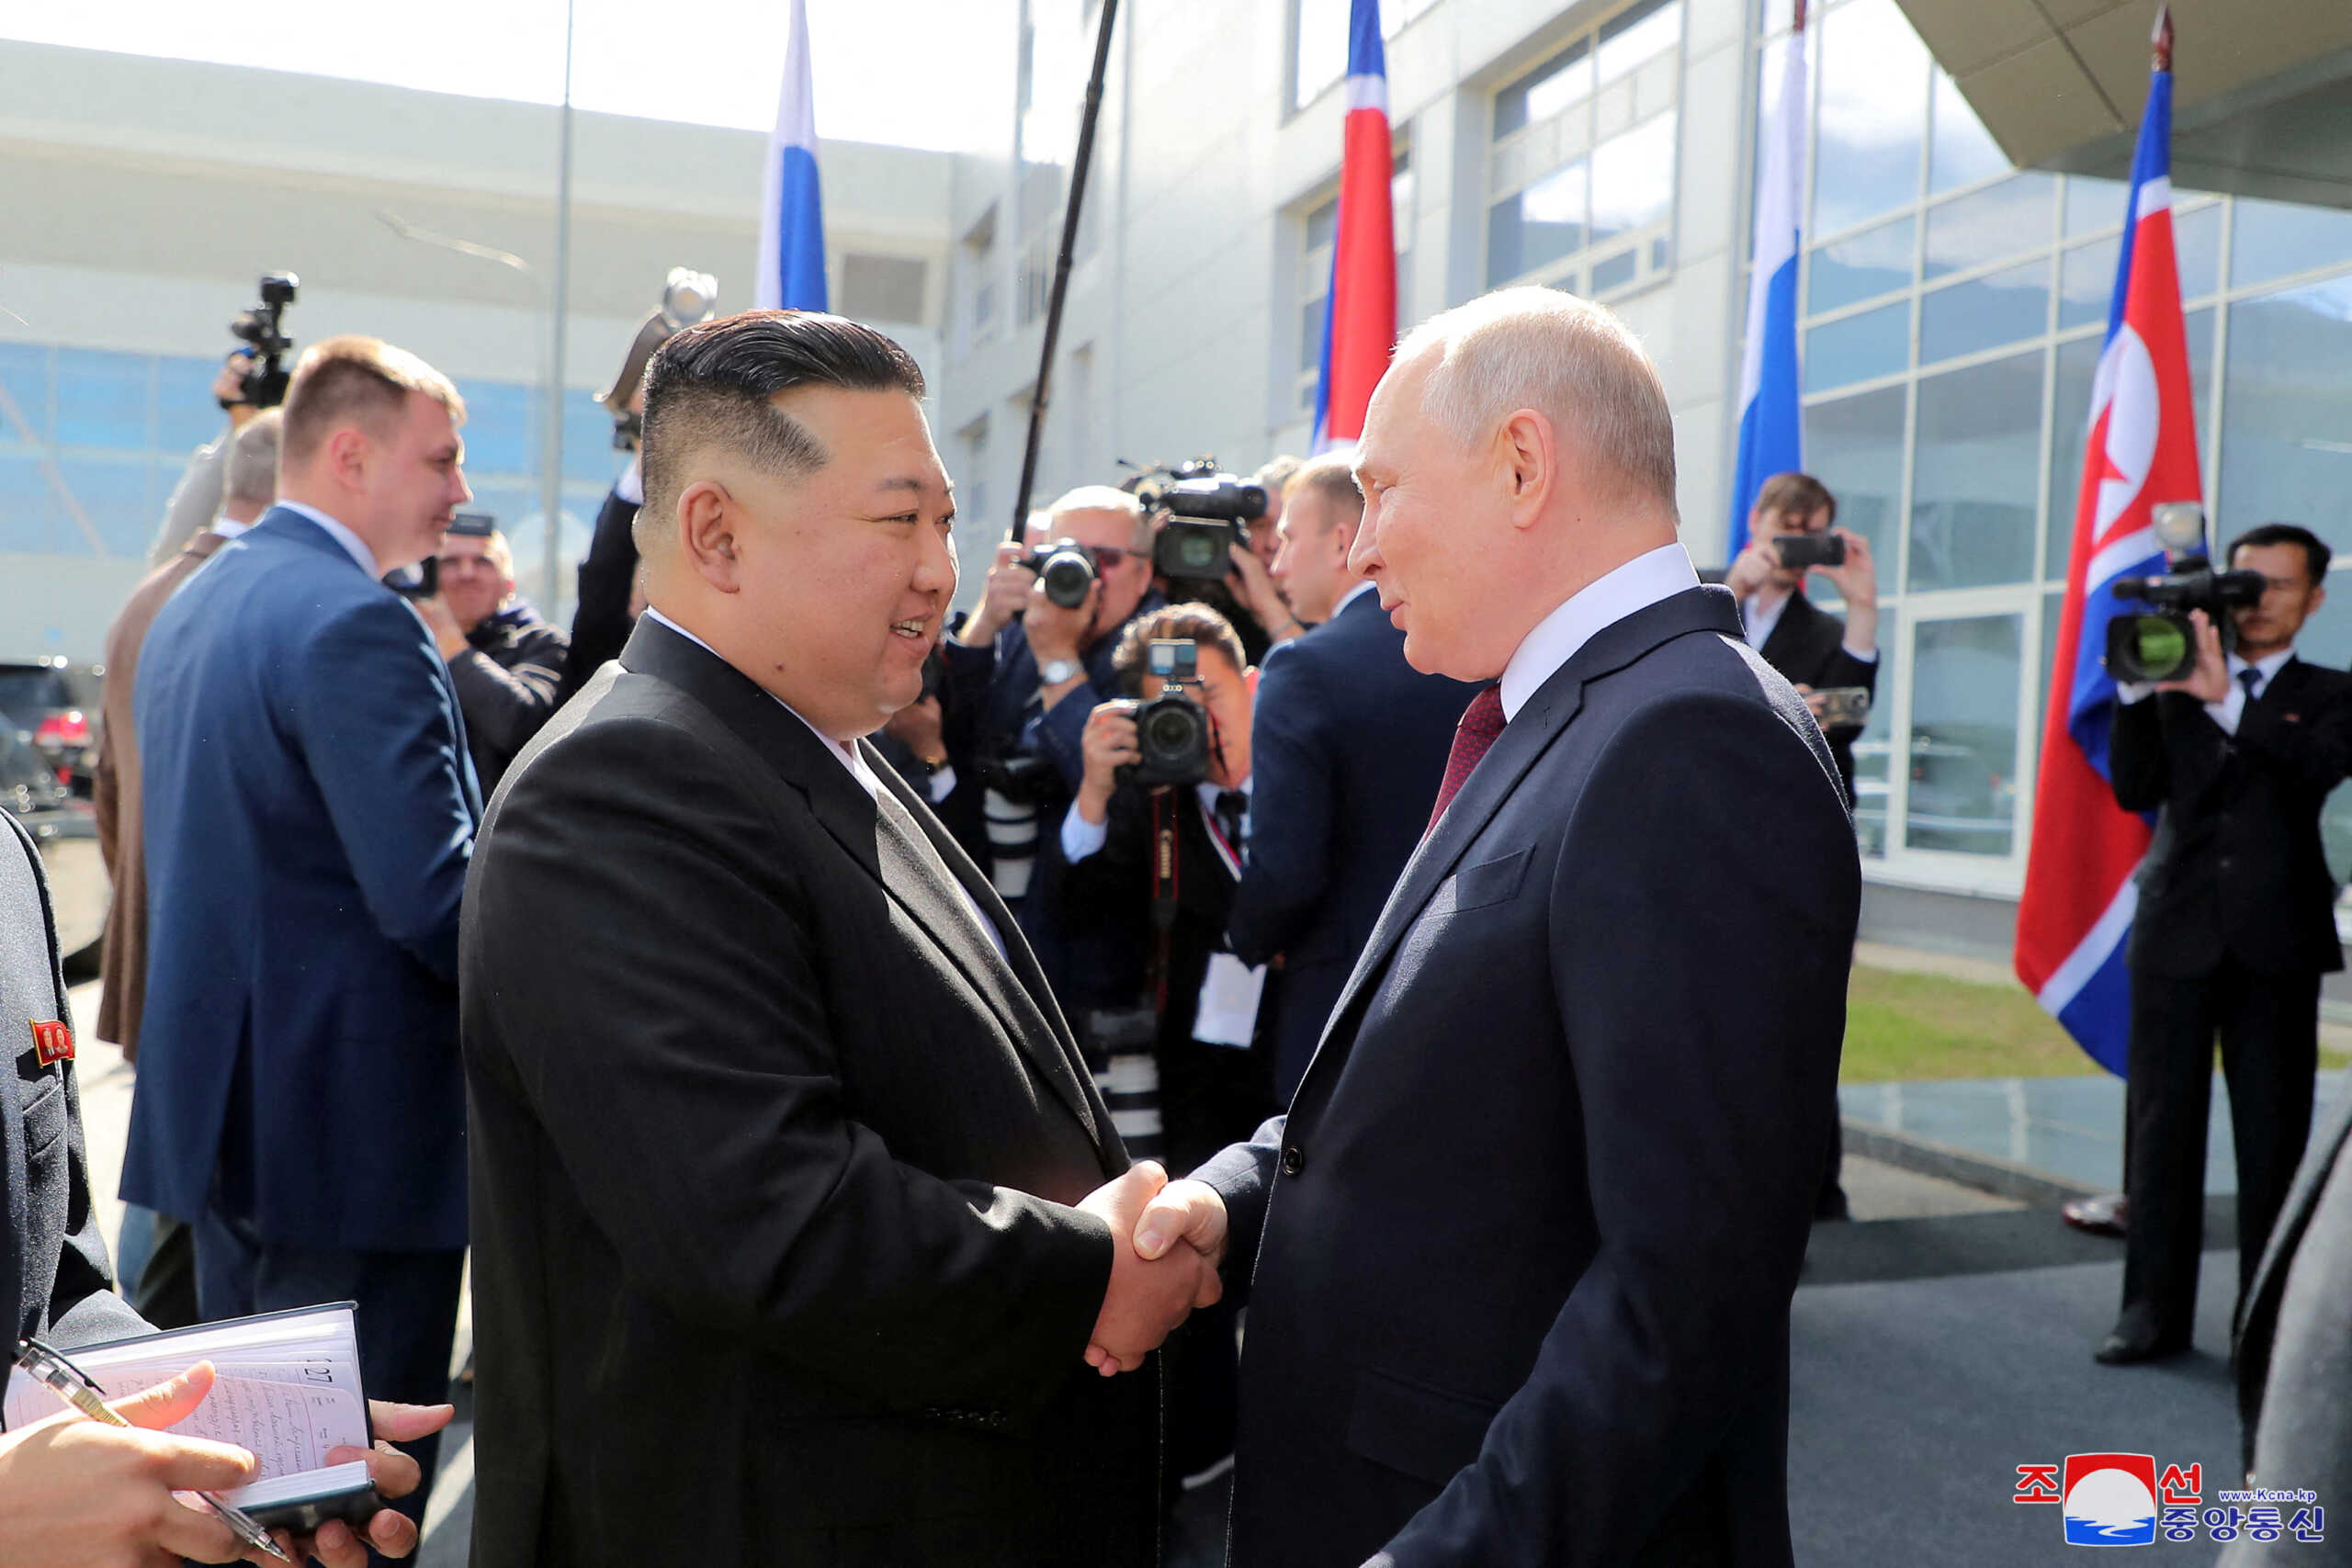 Ο Βλαντίμιρ Πούτιν αποδέχθηκε πρόσκληση του Κιμ Γιονγκ Ουν να επισκεφθεί τη Βόρεια Κορέα